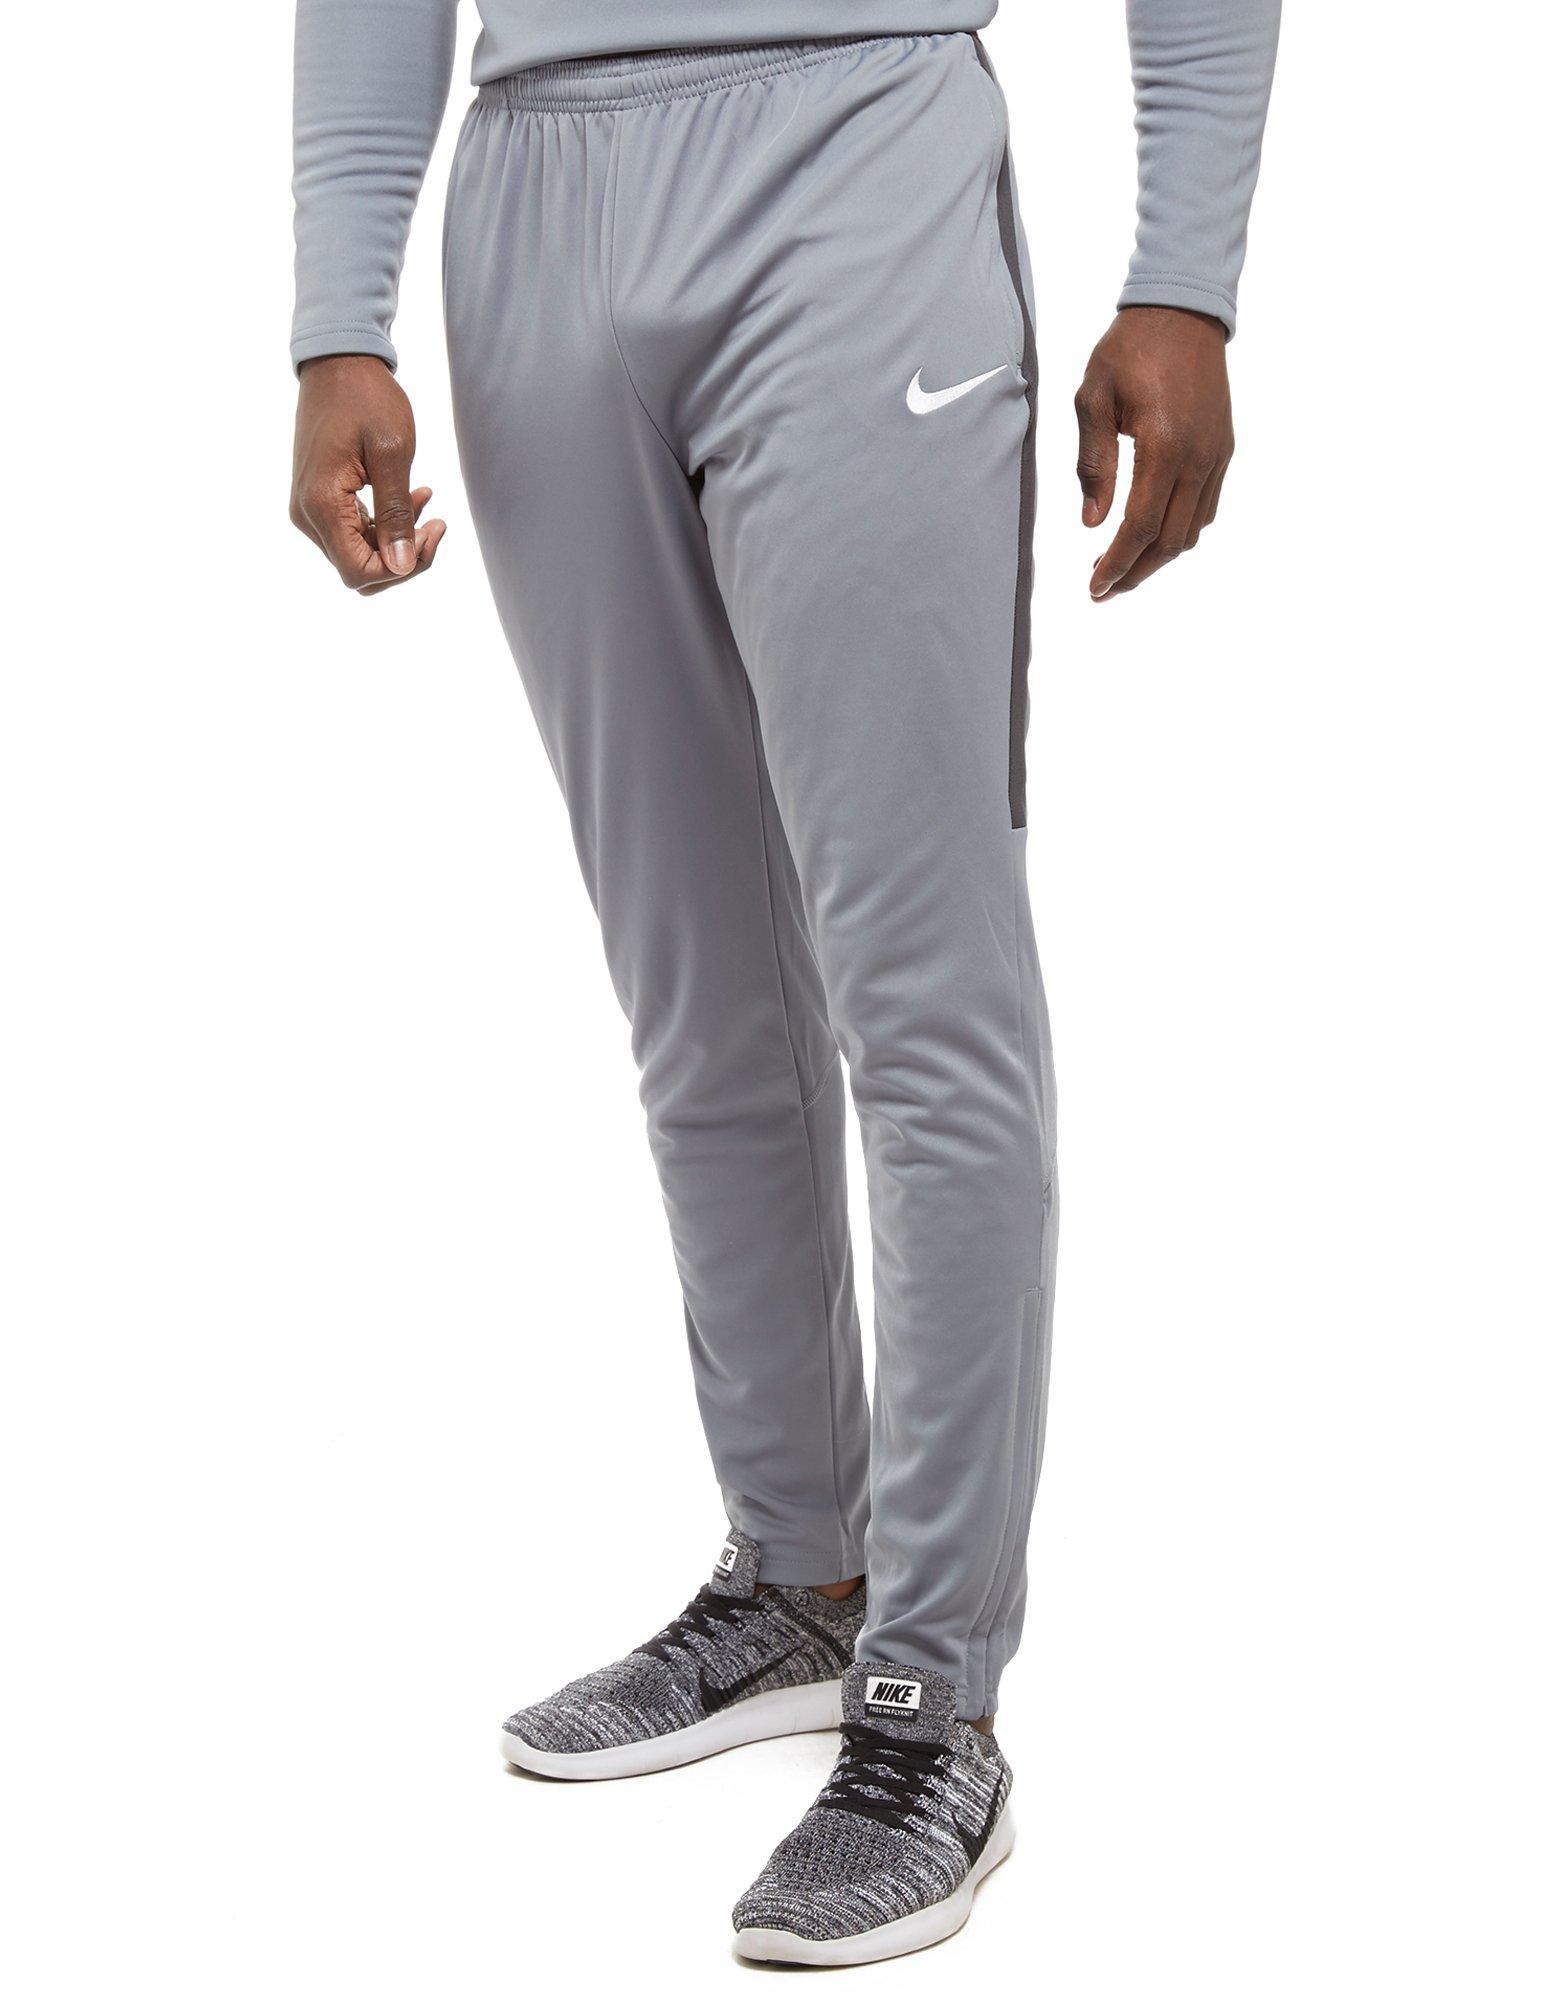 Nike Synthetic Academy 17 Pants in Grey 